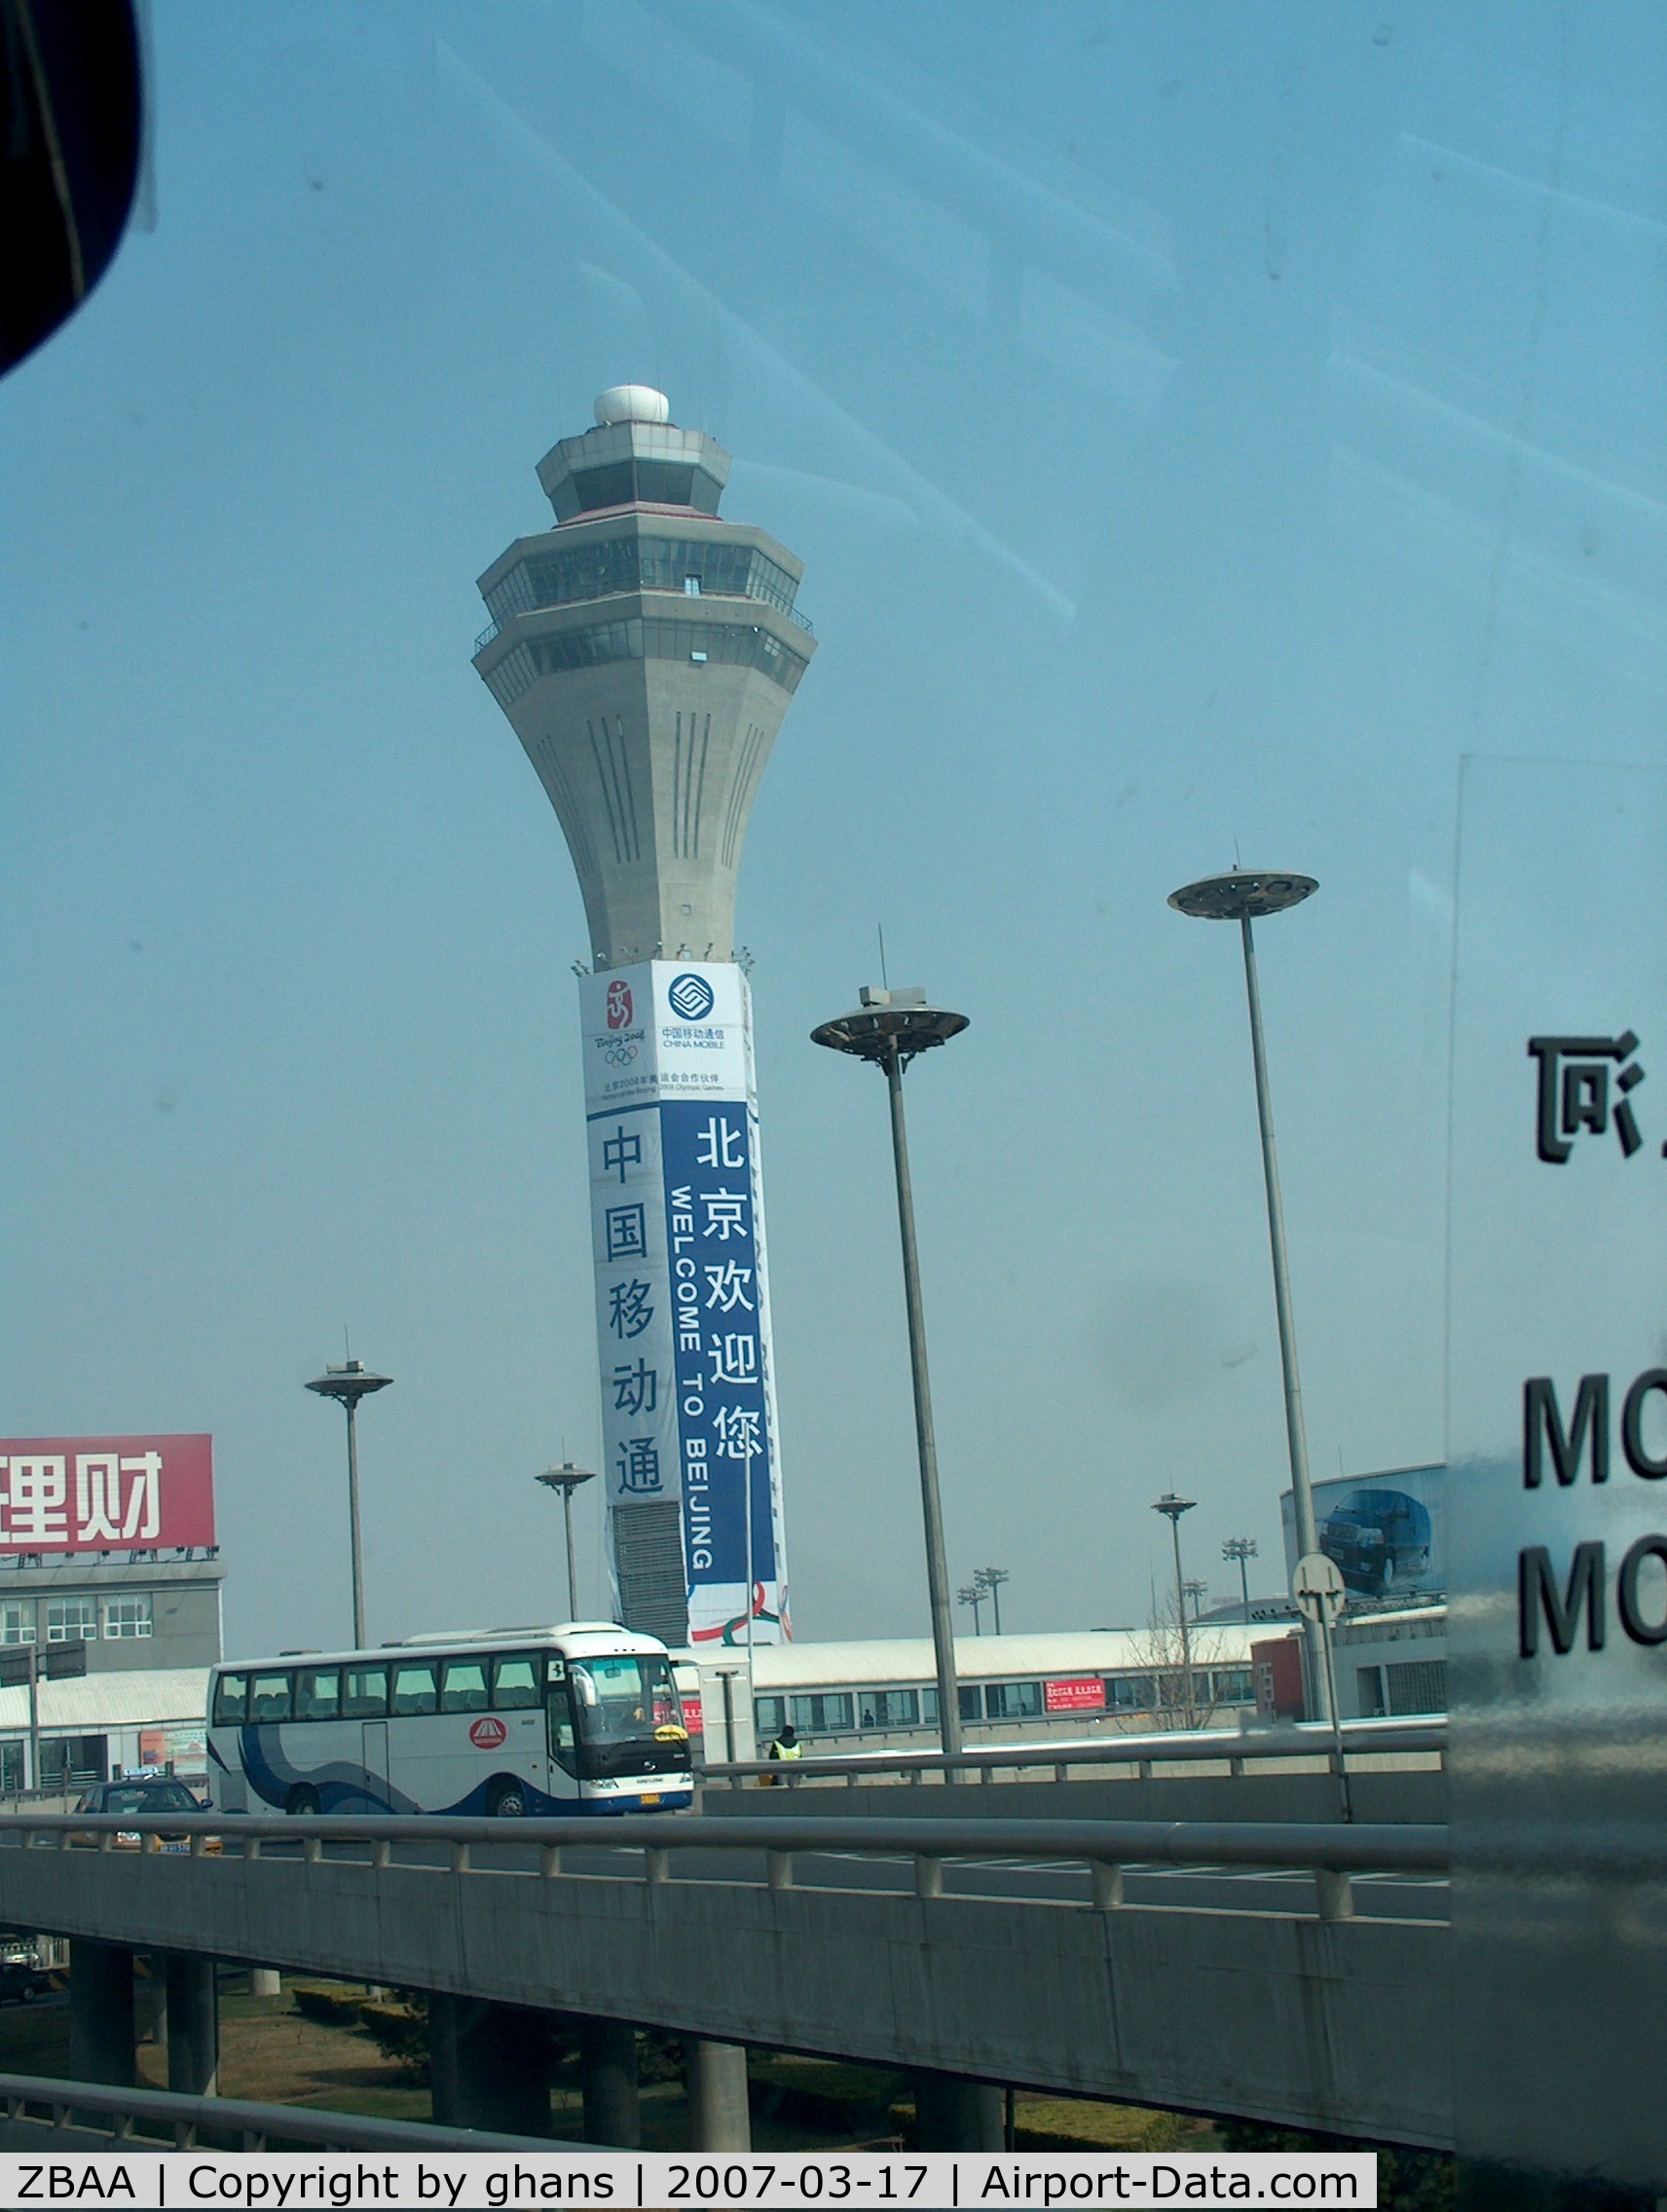 Beijing Capital International Airport, Beijing China (ZBAA) - Tower of Beijing Capital Intl. Airport